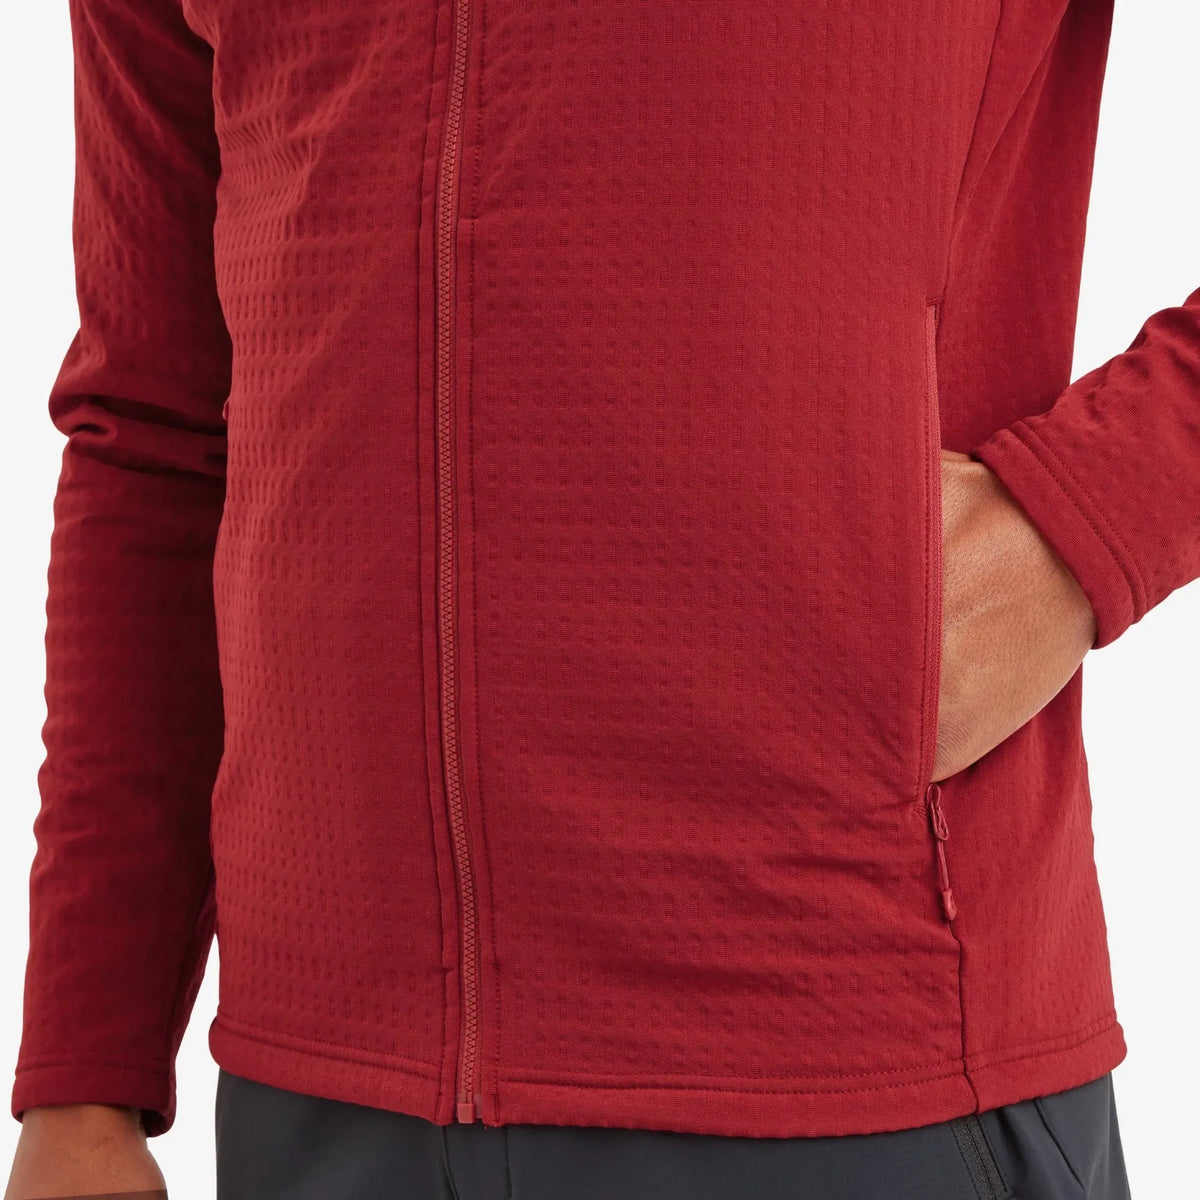 Montane Men&#39;s Protium XT Hooded Fleece Jacket - Acer Red